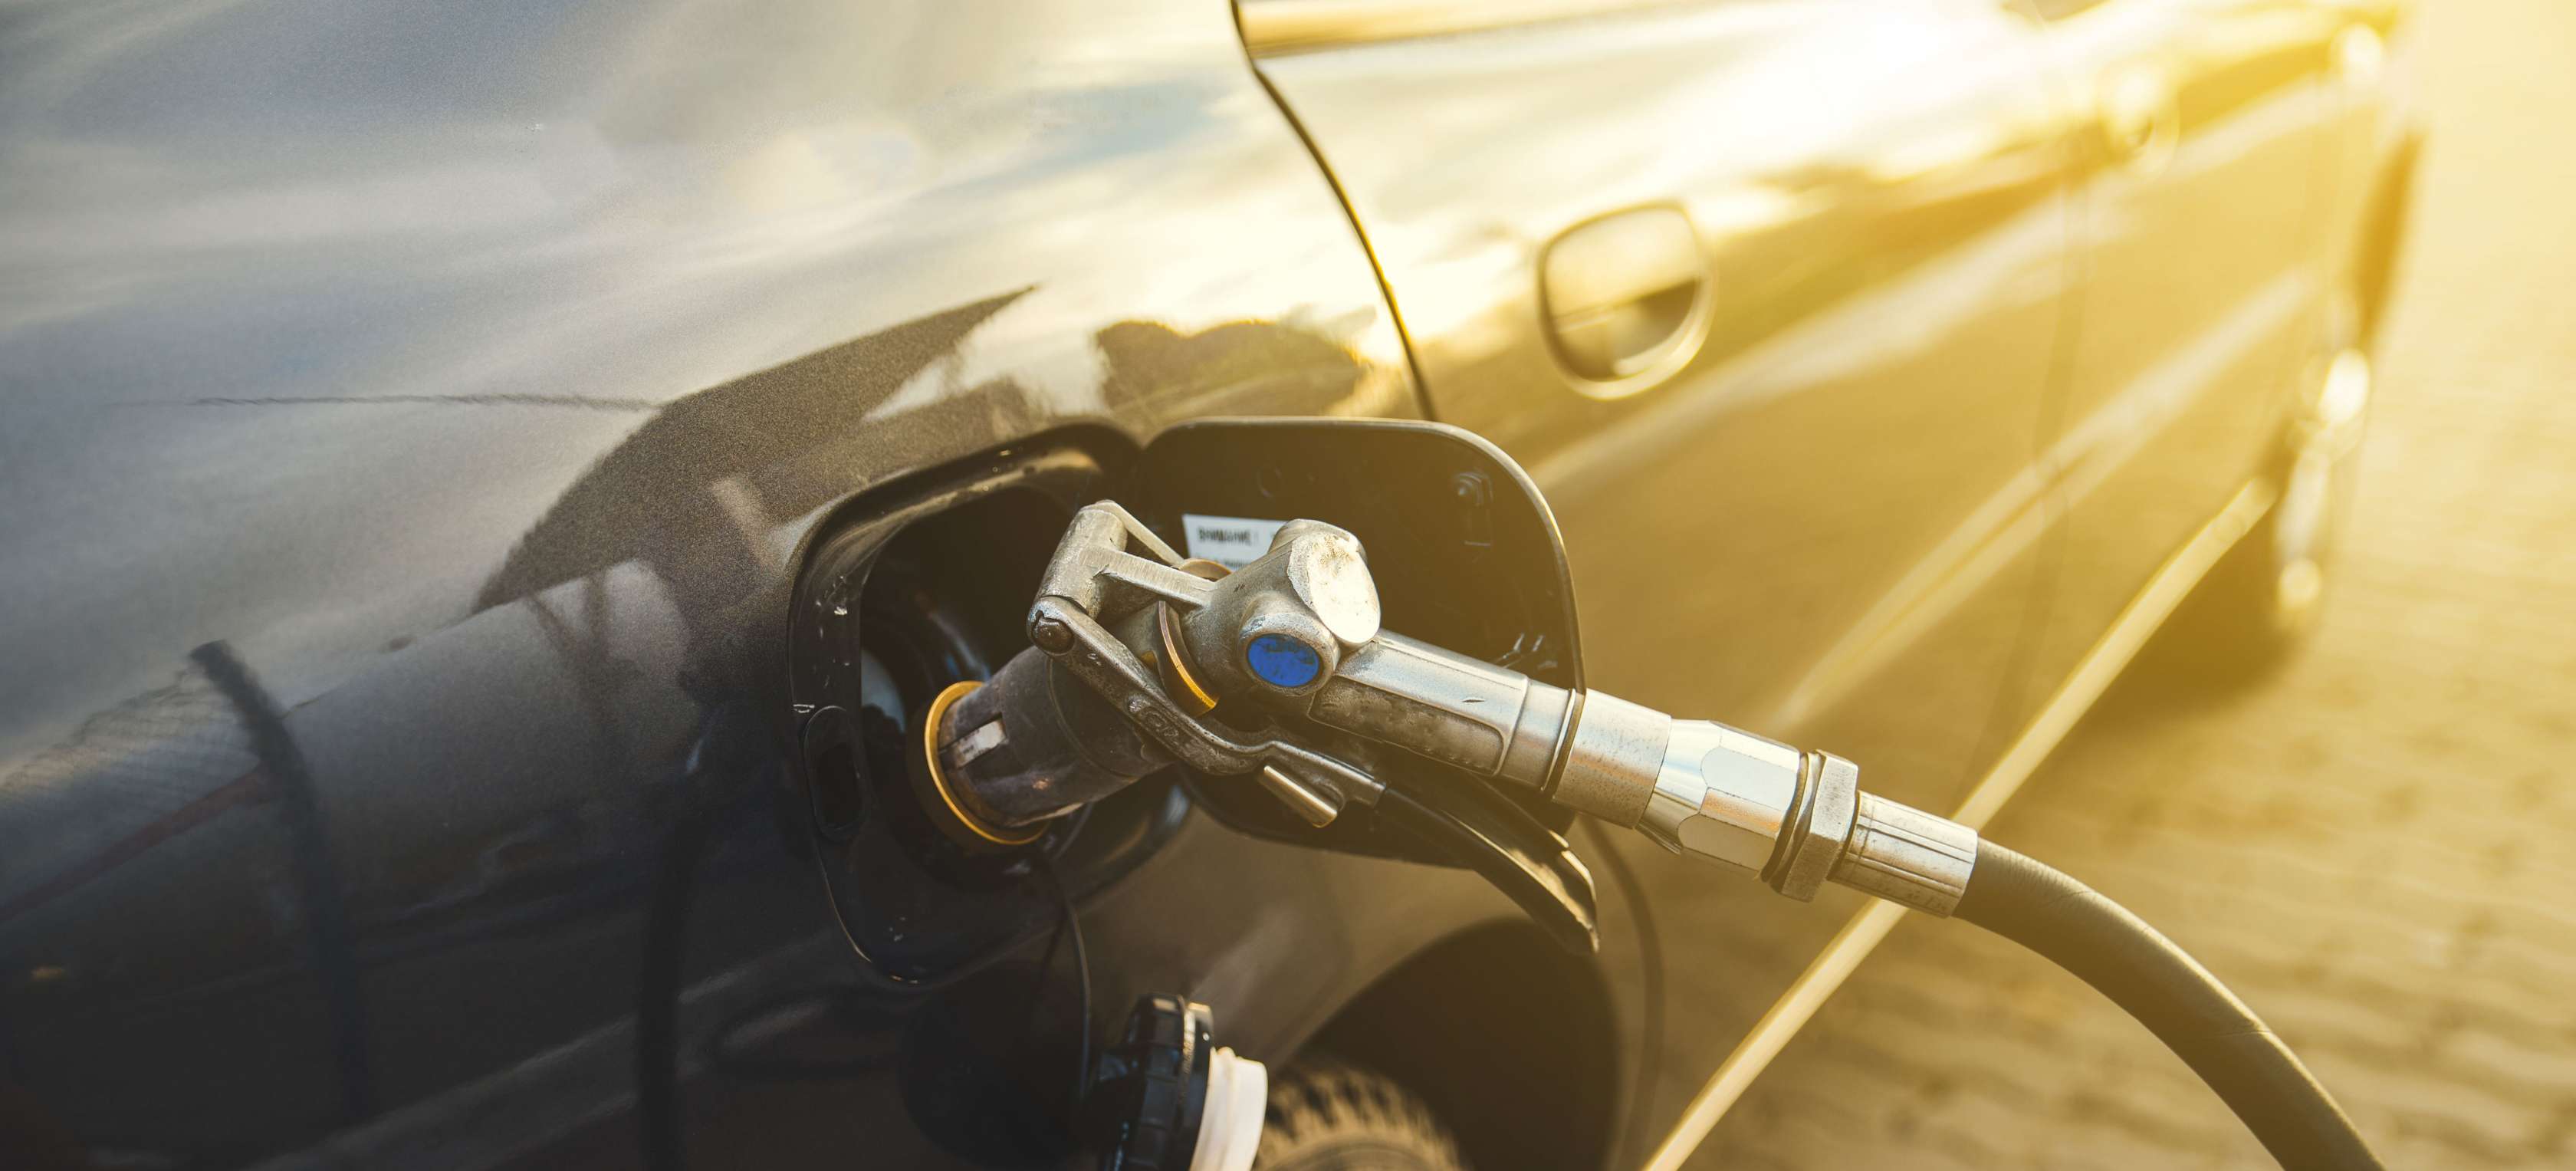 Ein Erdgas-Auto tankt CNG und fährt umweltfreundlicher als Benziner oder Diesel-Pkw